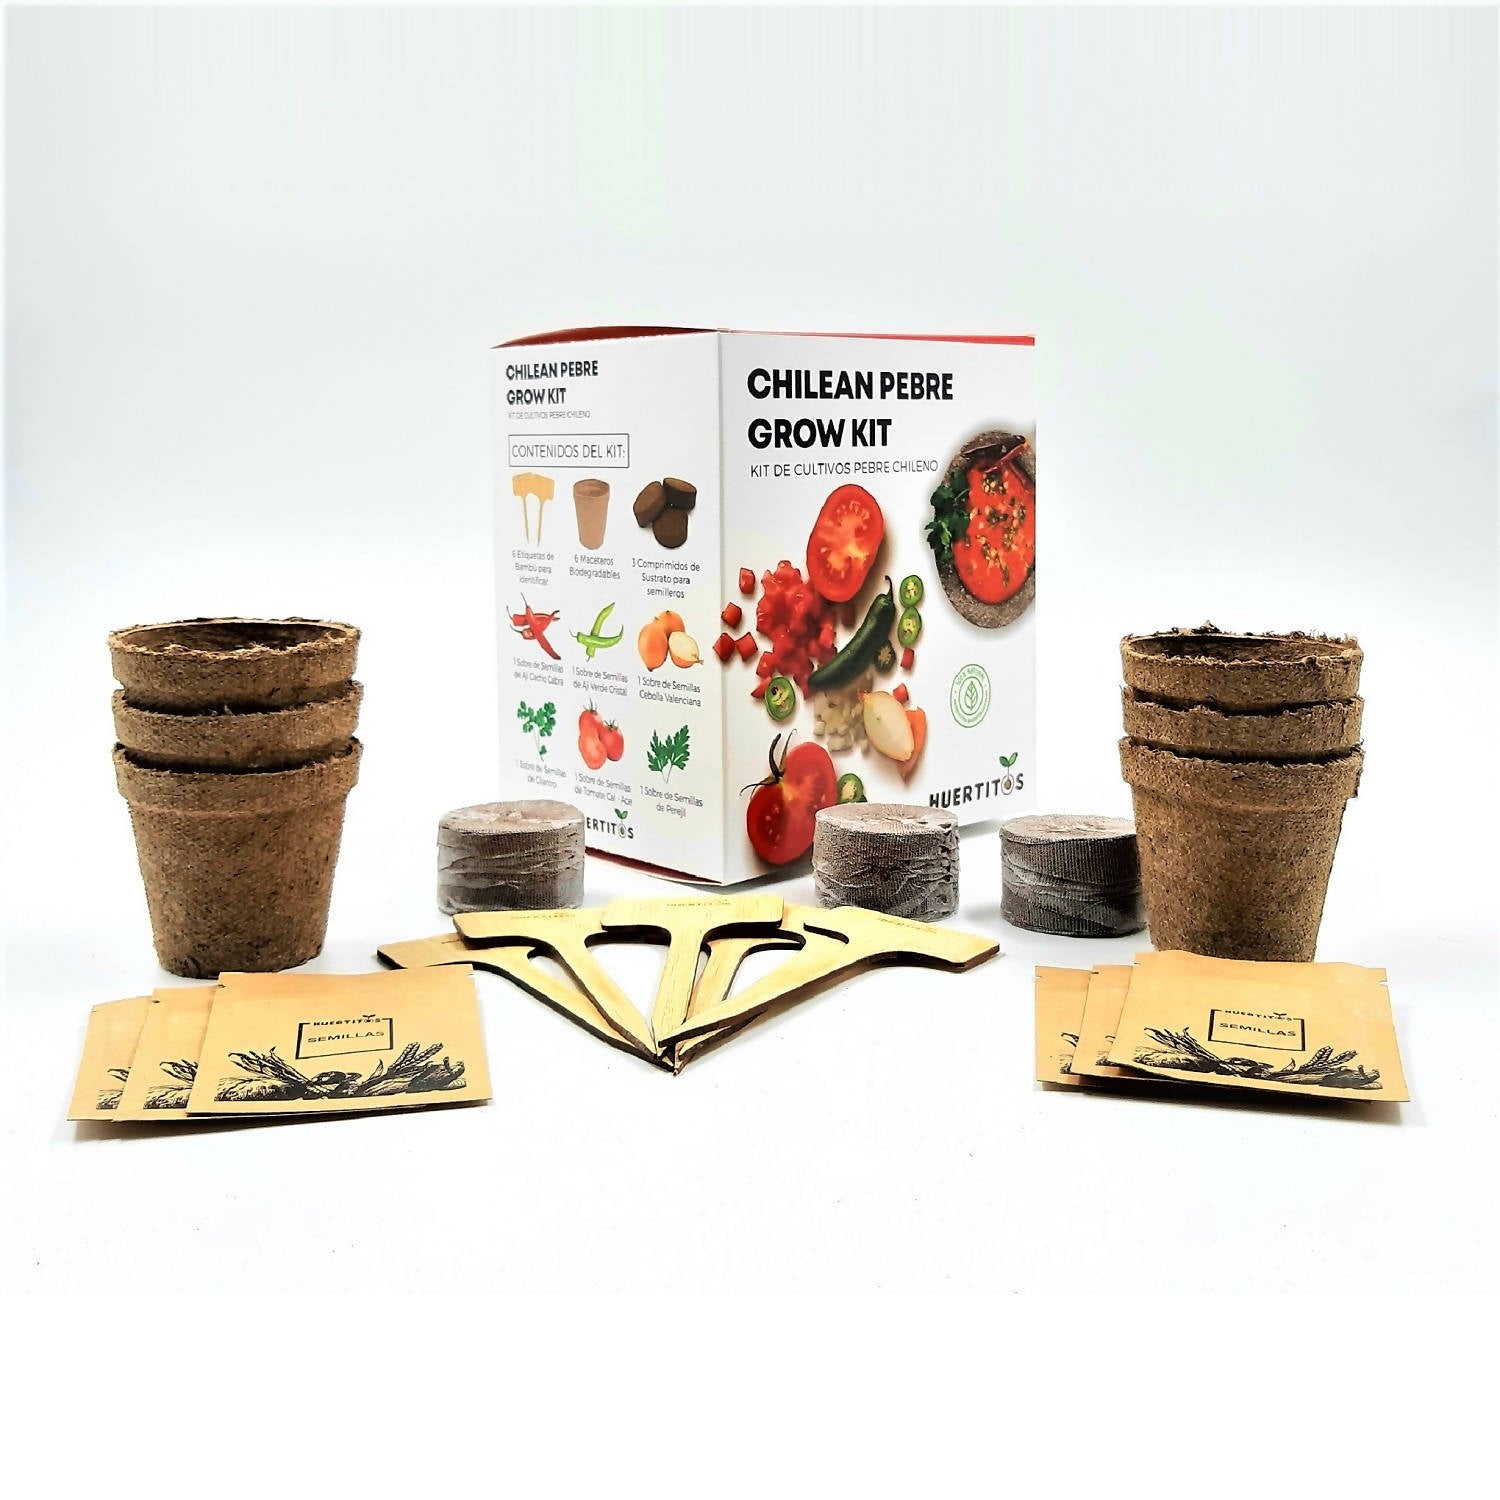 Kit de cultivo Pebre Chileno (Chilean Pebre GROW KIT)